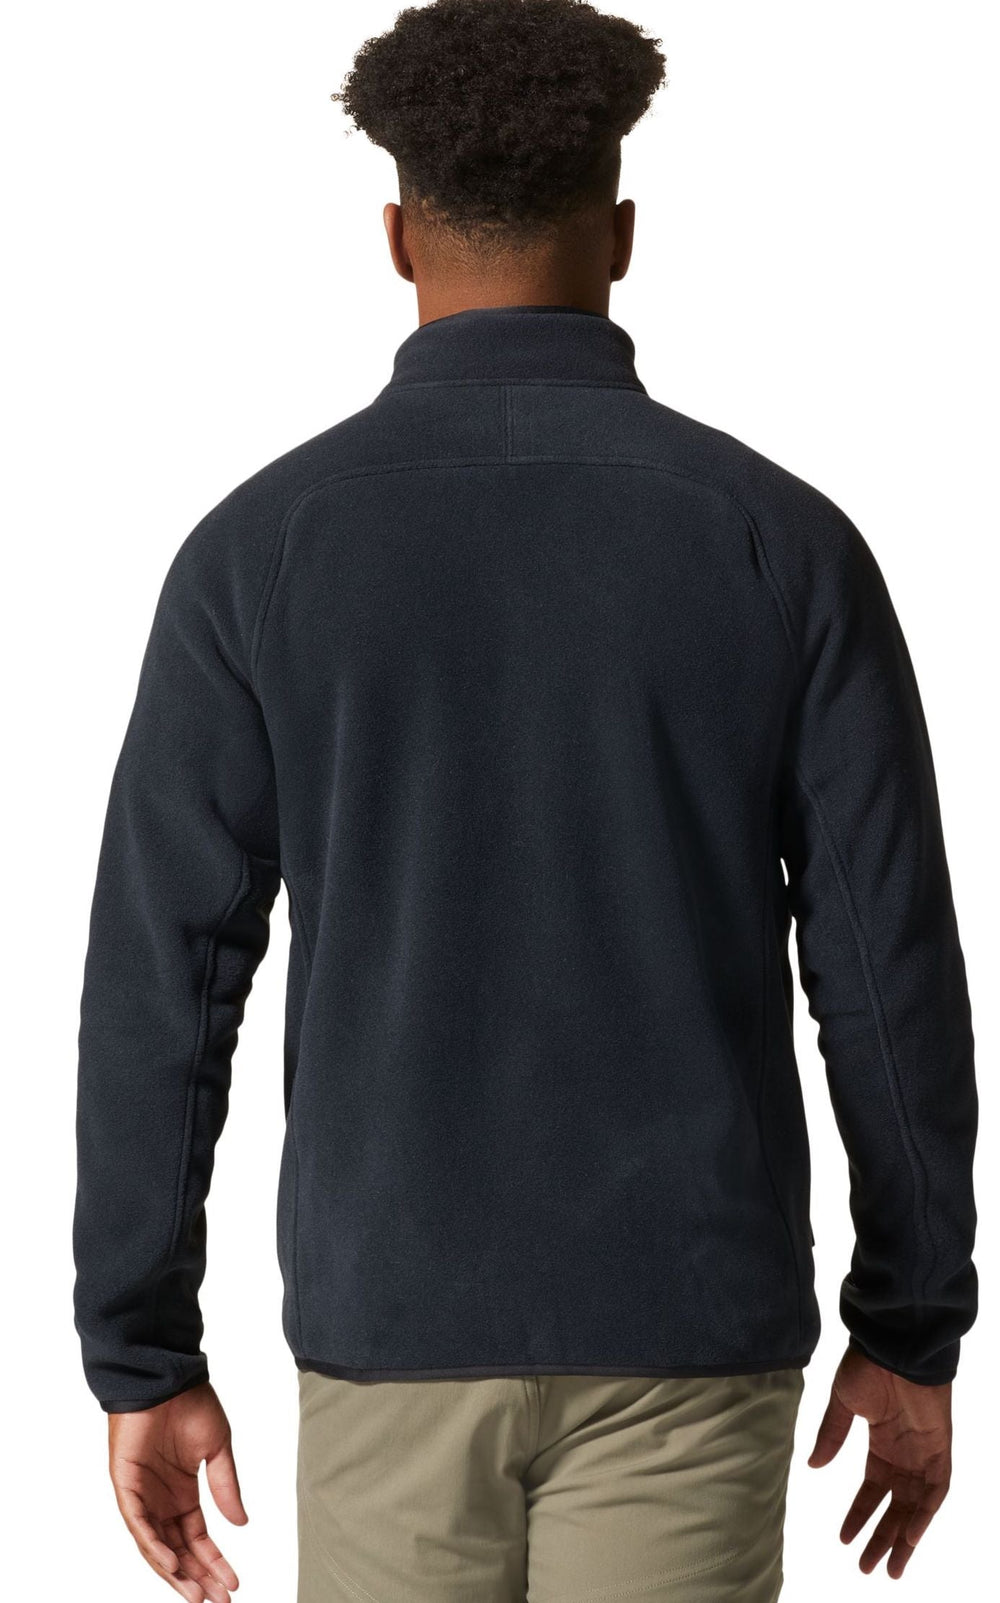 Men's Polartec® Double Brushed Full Zip Fleece Jacke | S4 Supplies